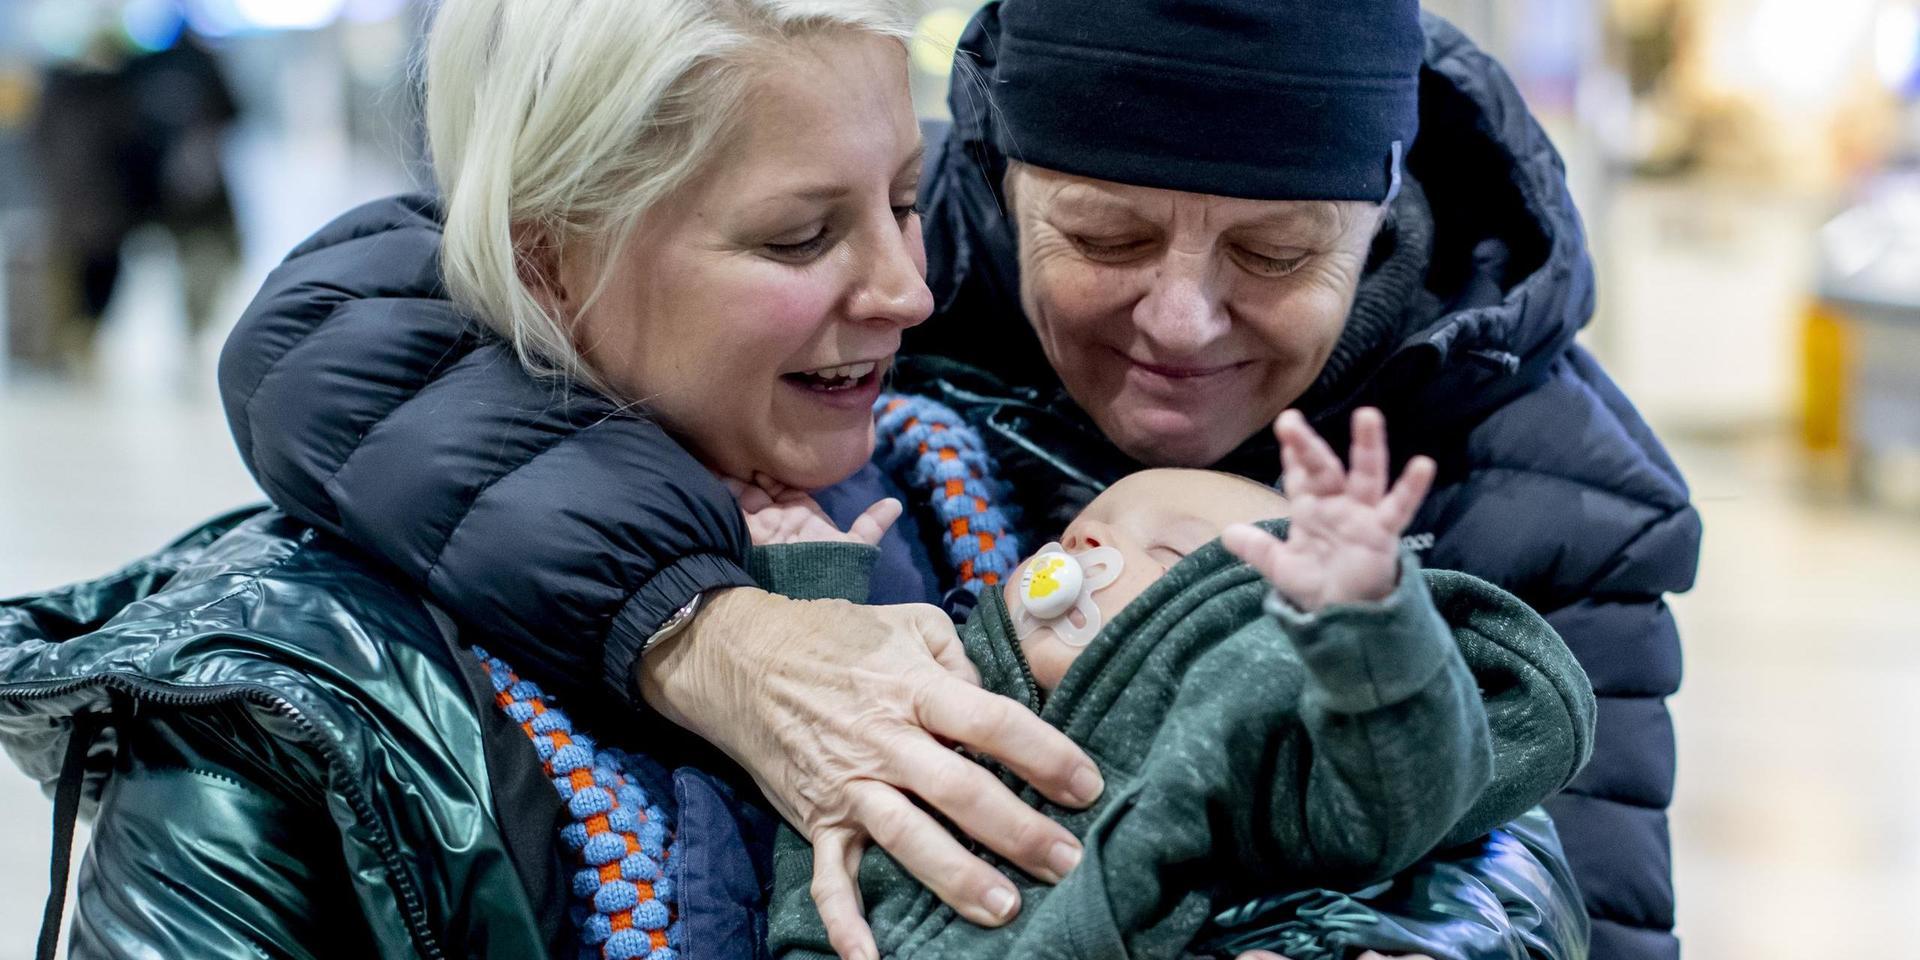 Amanda Thorell med sonen Caspian välkomnas av mormor Lotta Rapp i ankomsthallen på Landvetter flygplats utanför Göteborg. 'De får gärna stanna hur länge som helst', säger Lotta Rapp.